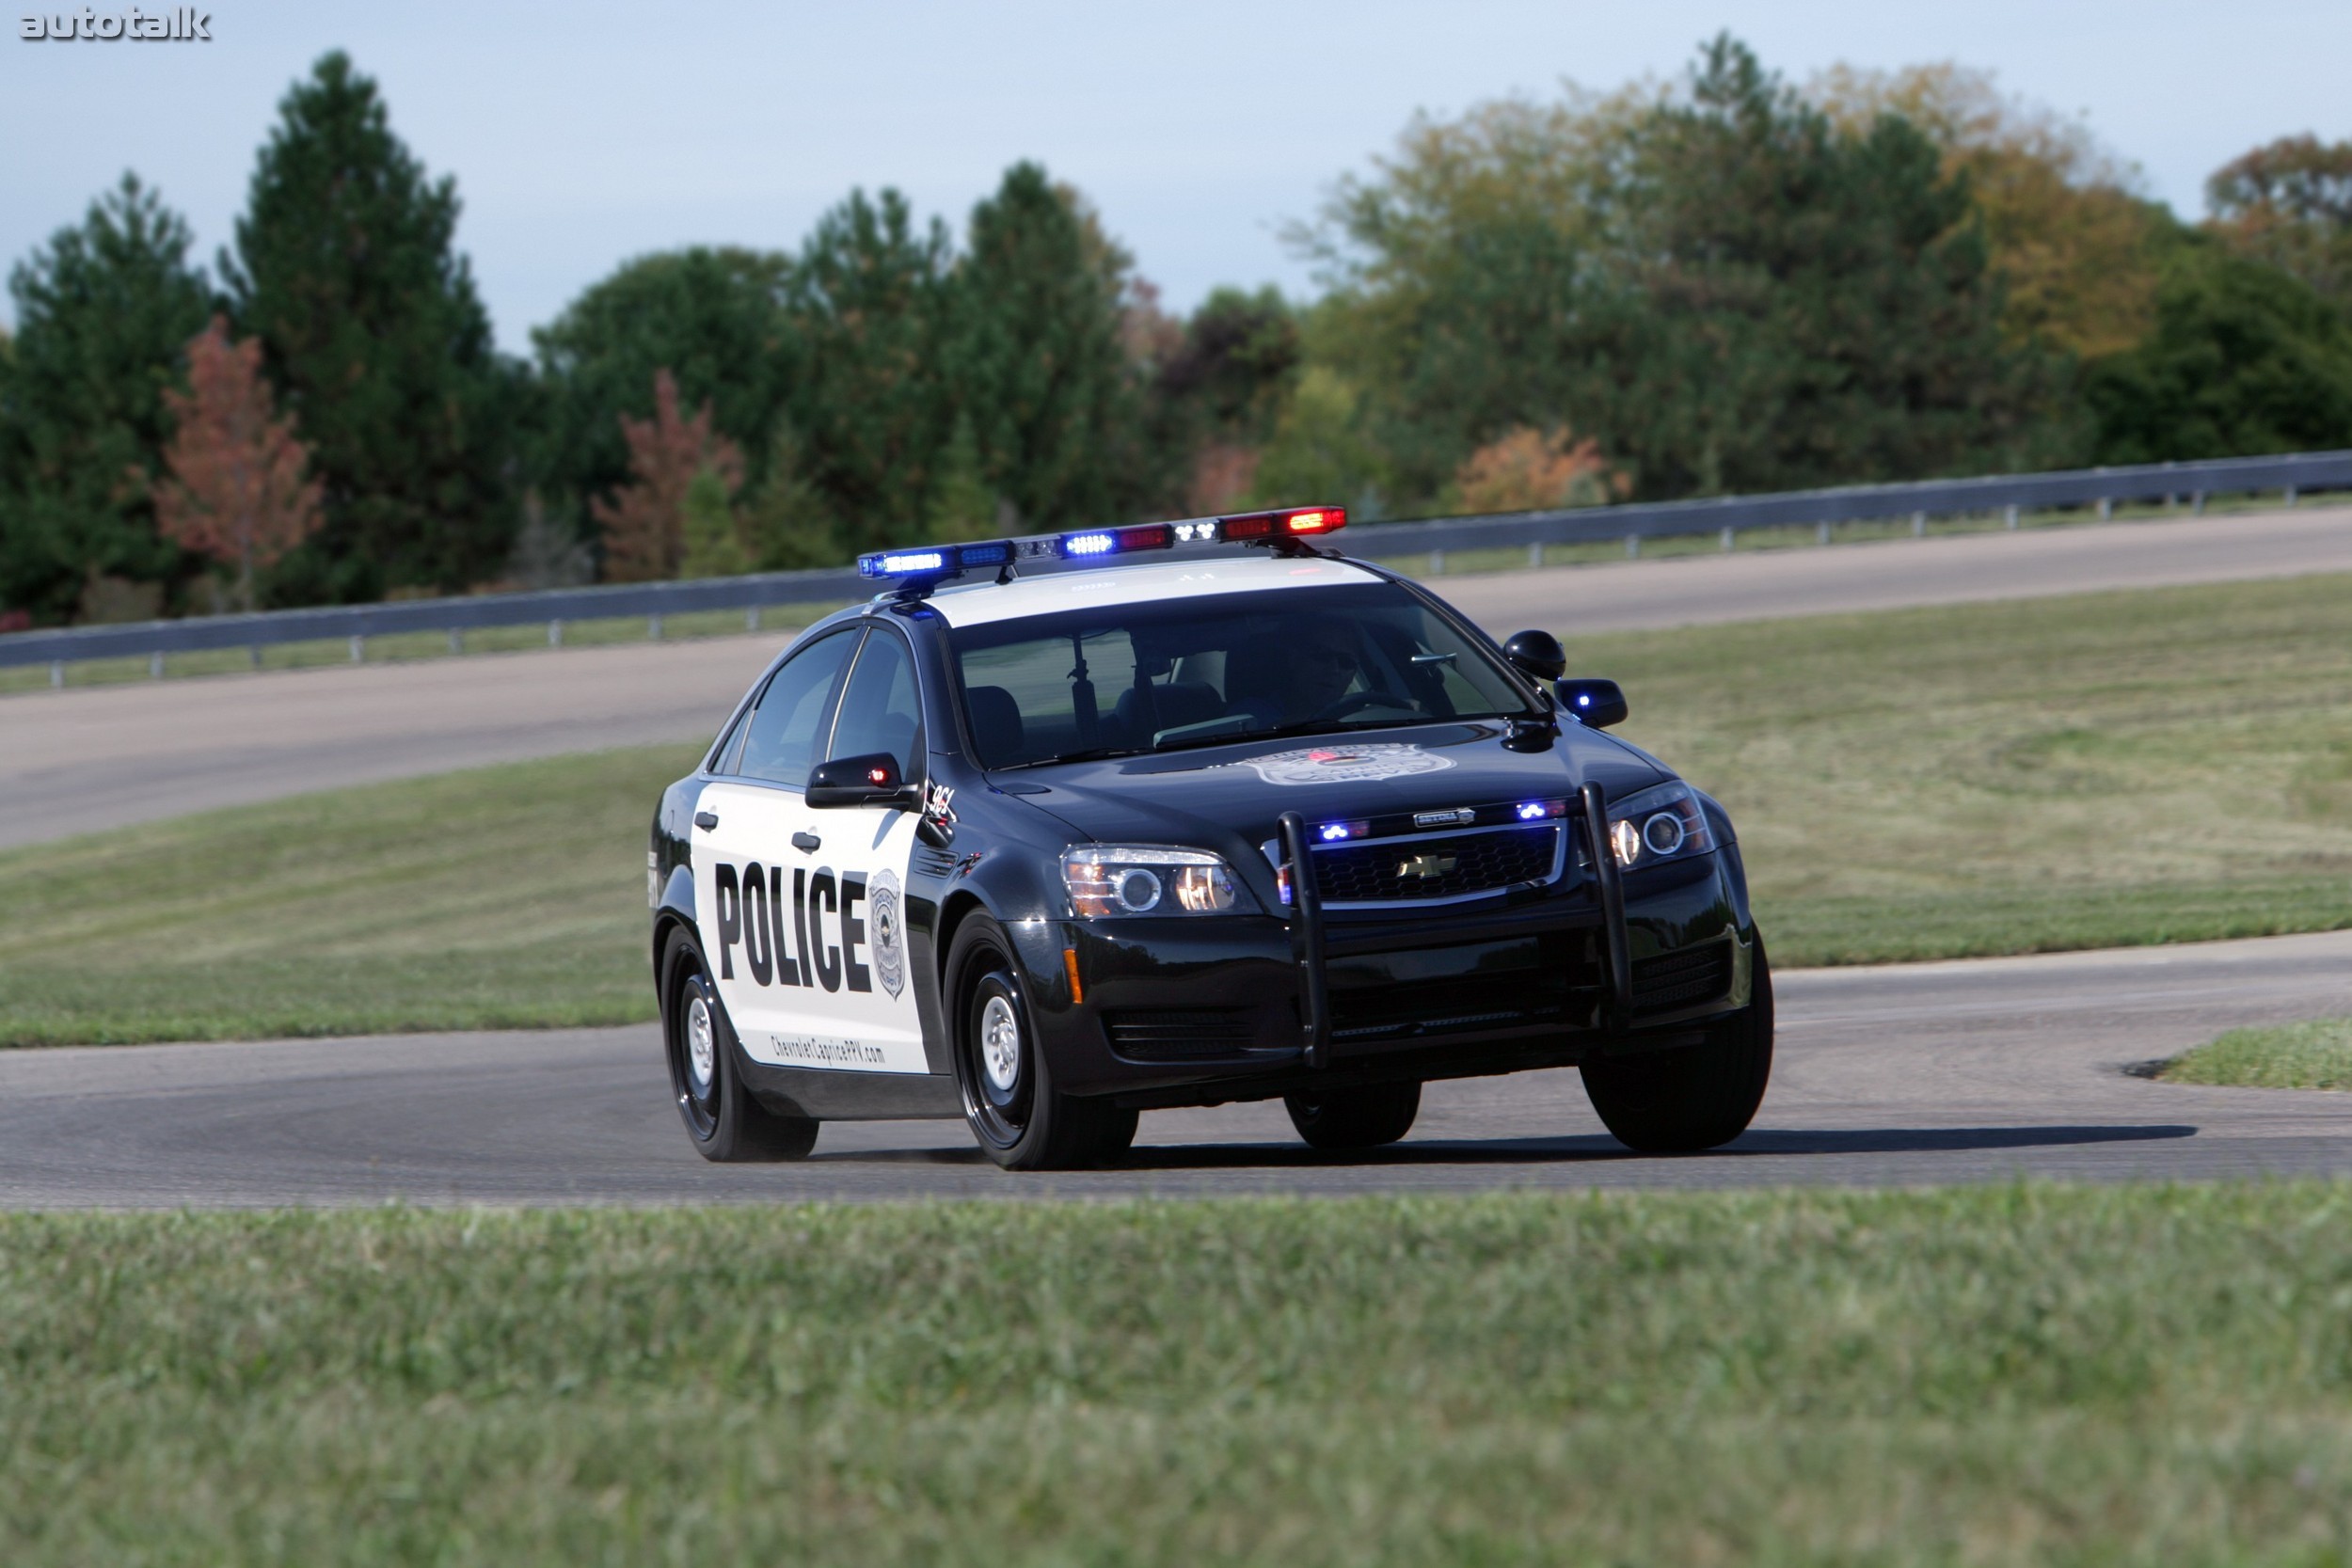 Марки полицейских машин. Chevrolet Caprice Police 2010. Chevrolet Caprice 2011. Chevrolet Caprice 2006 Police. Chevrolet Caprice Police Patrol vehicle.